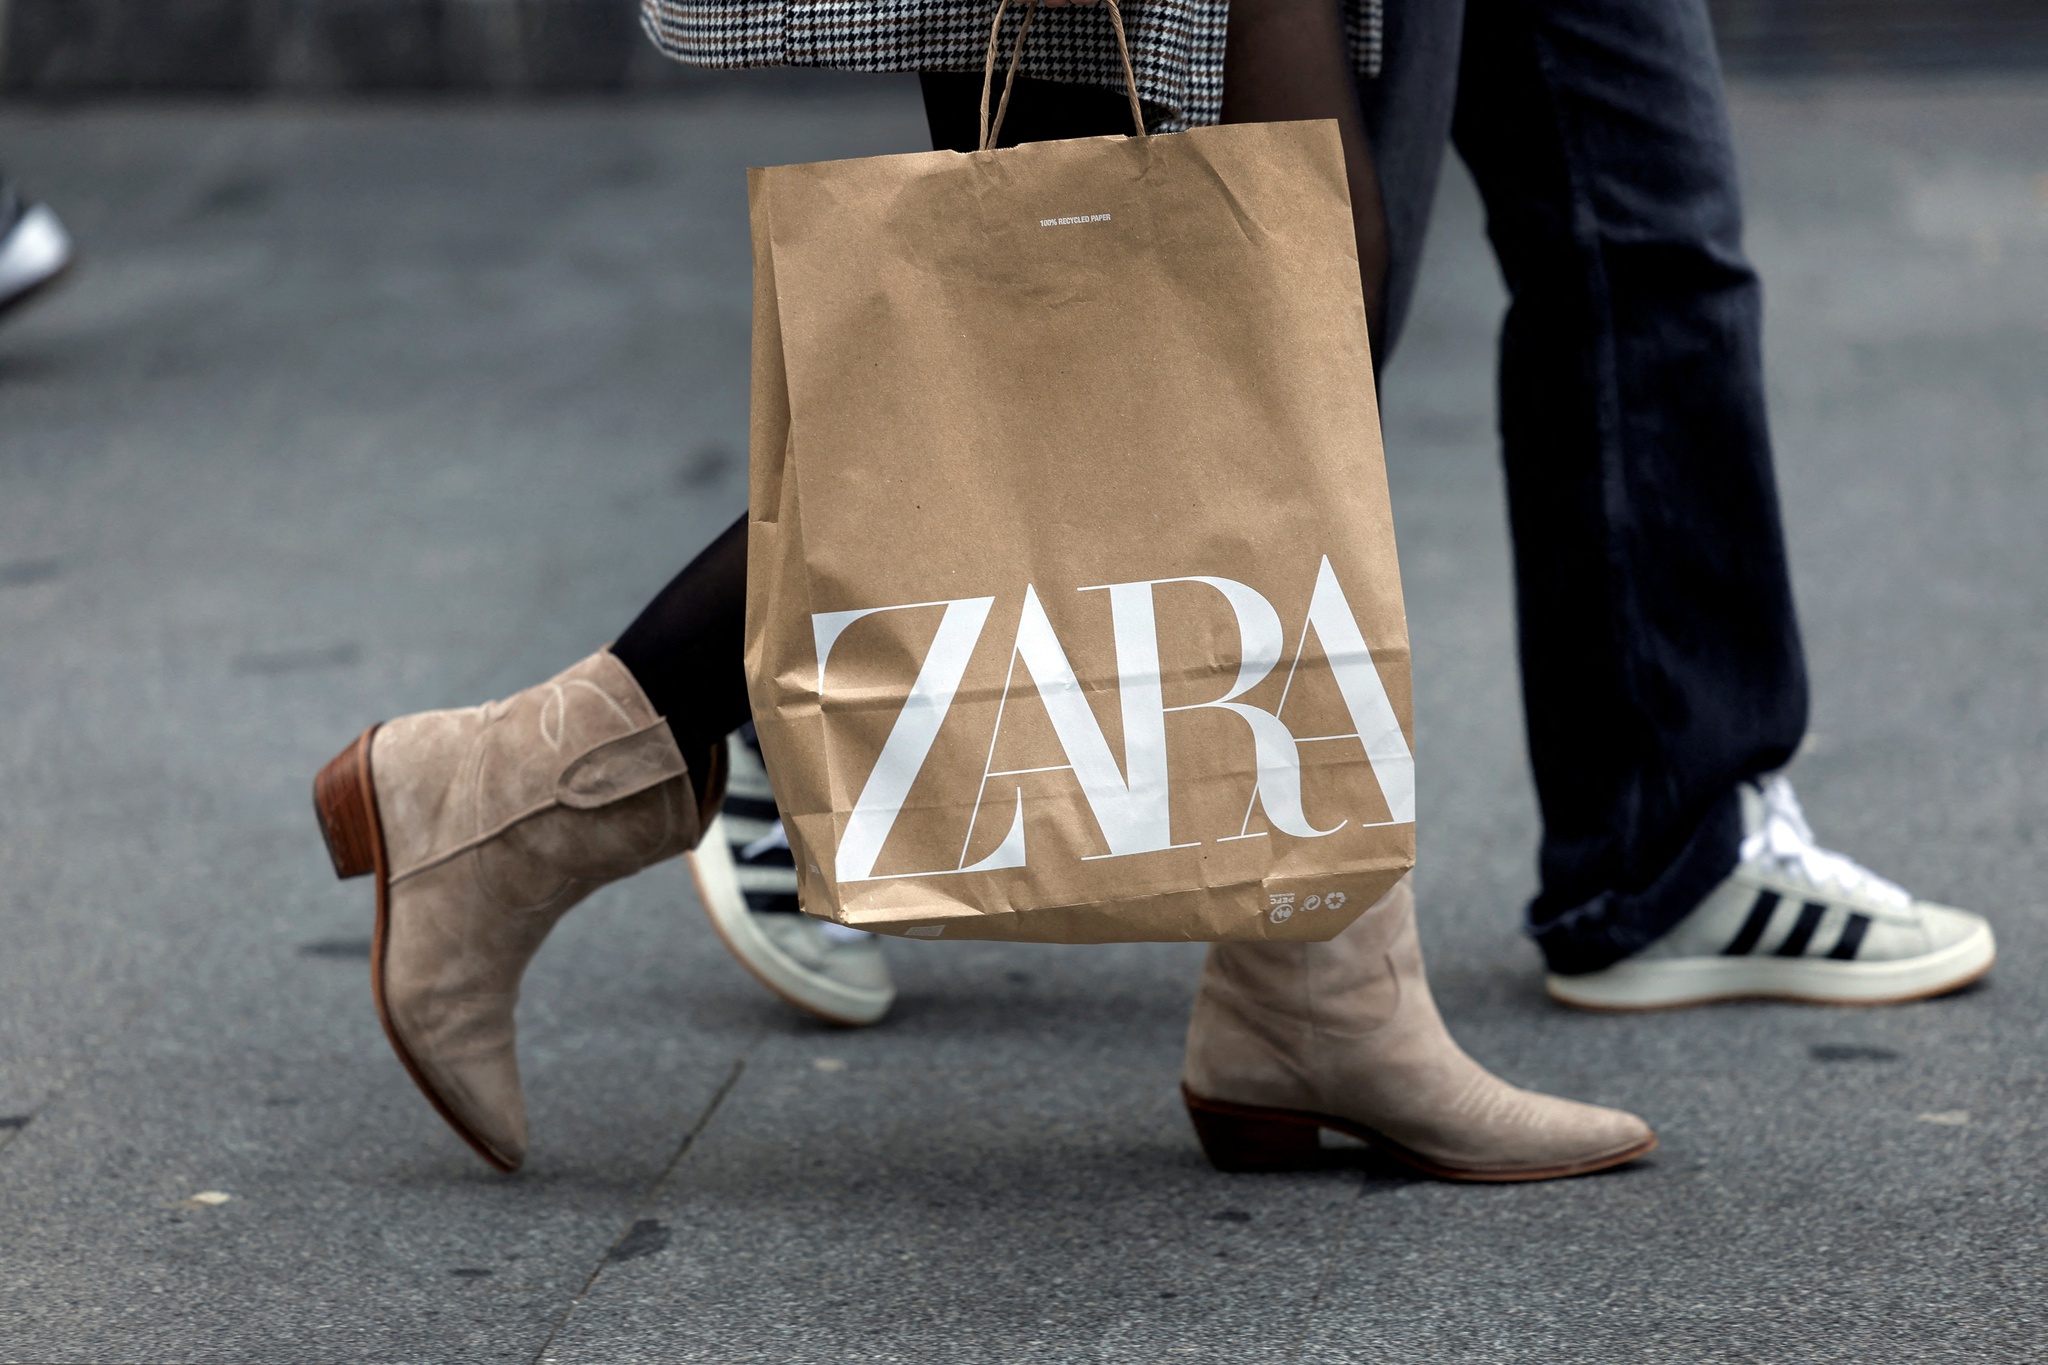 Arquivo para etiquetas de roupa da Zara - Fashion Trends